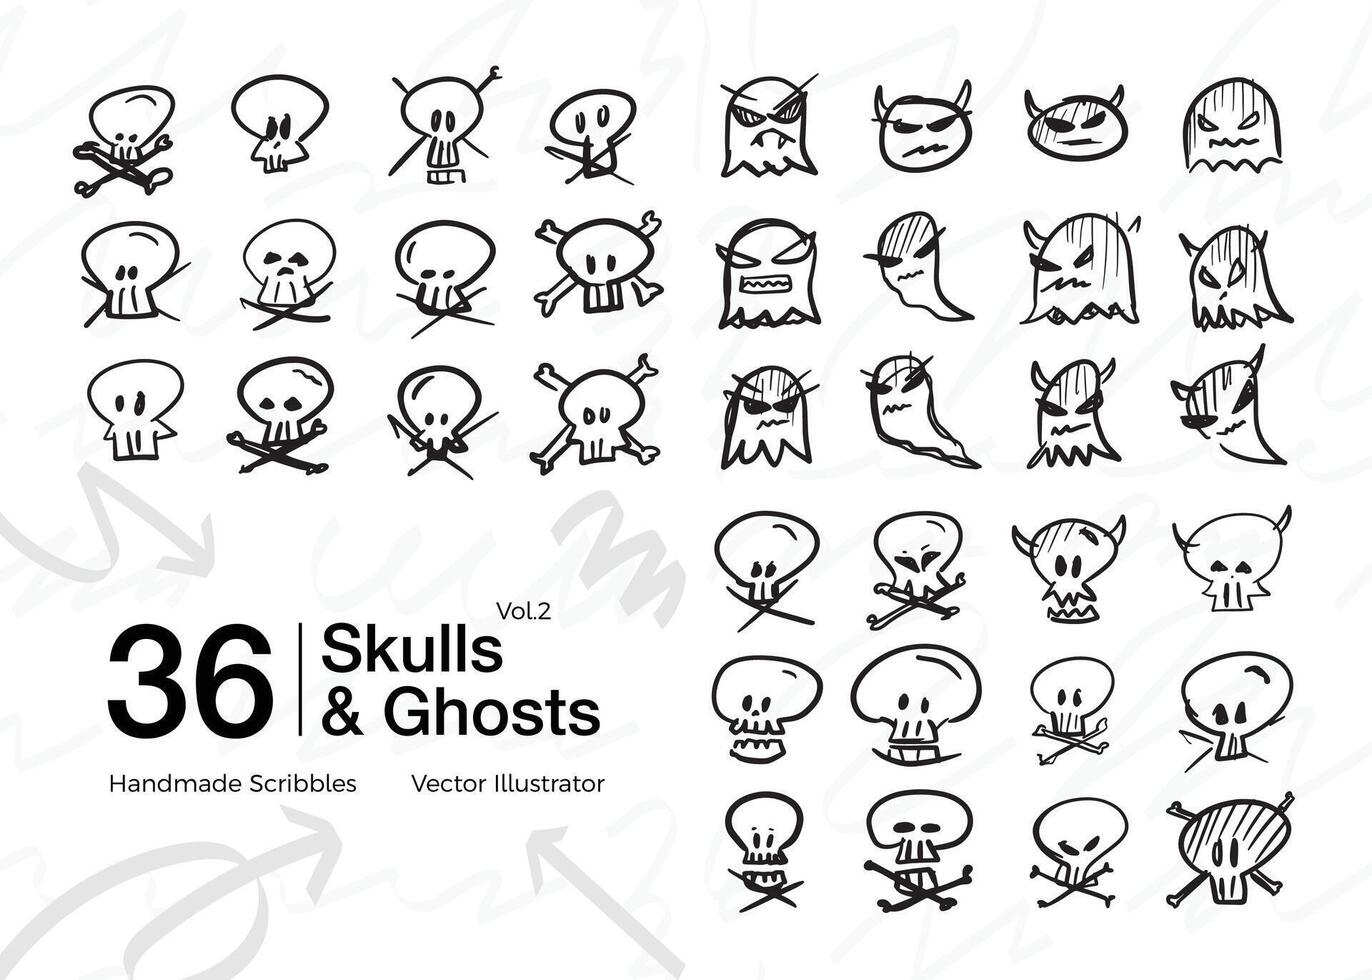 verzameling van tekening schetsen van geesten en schedels vector